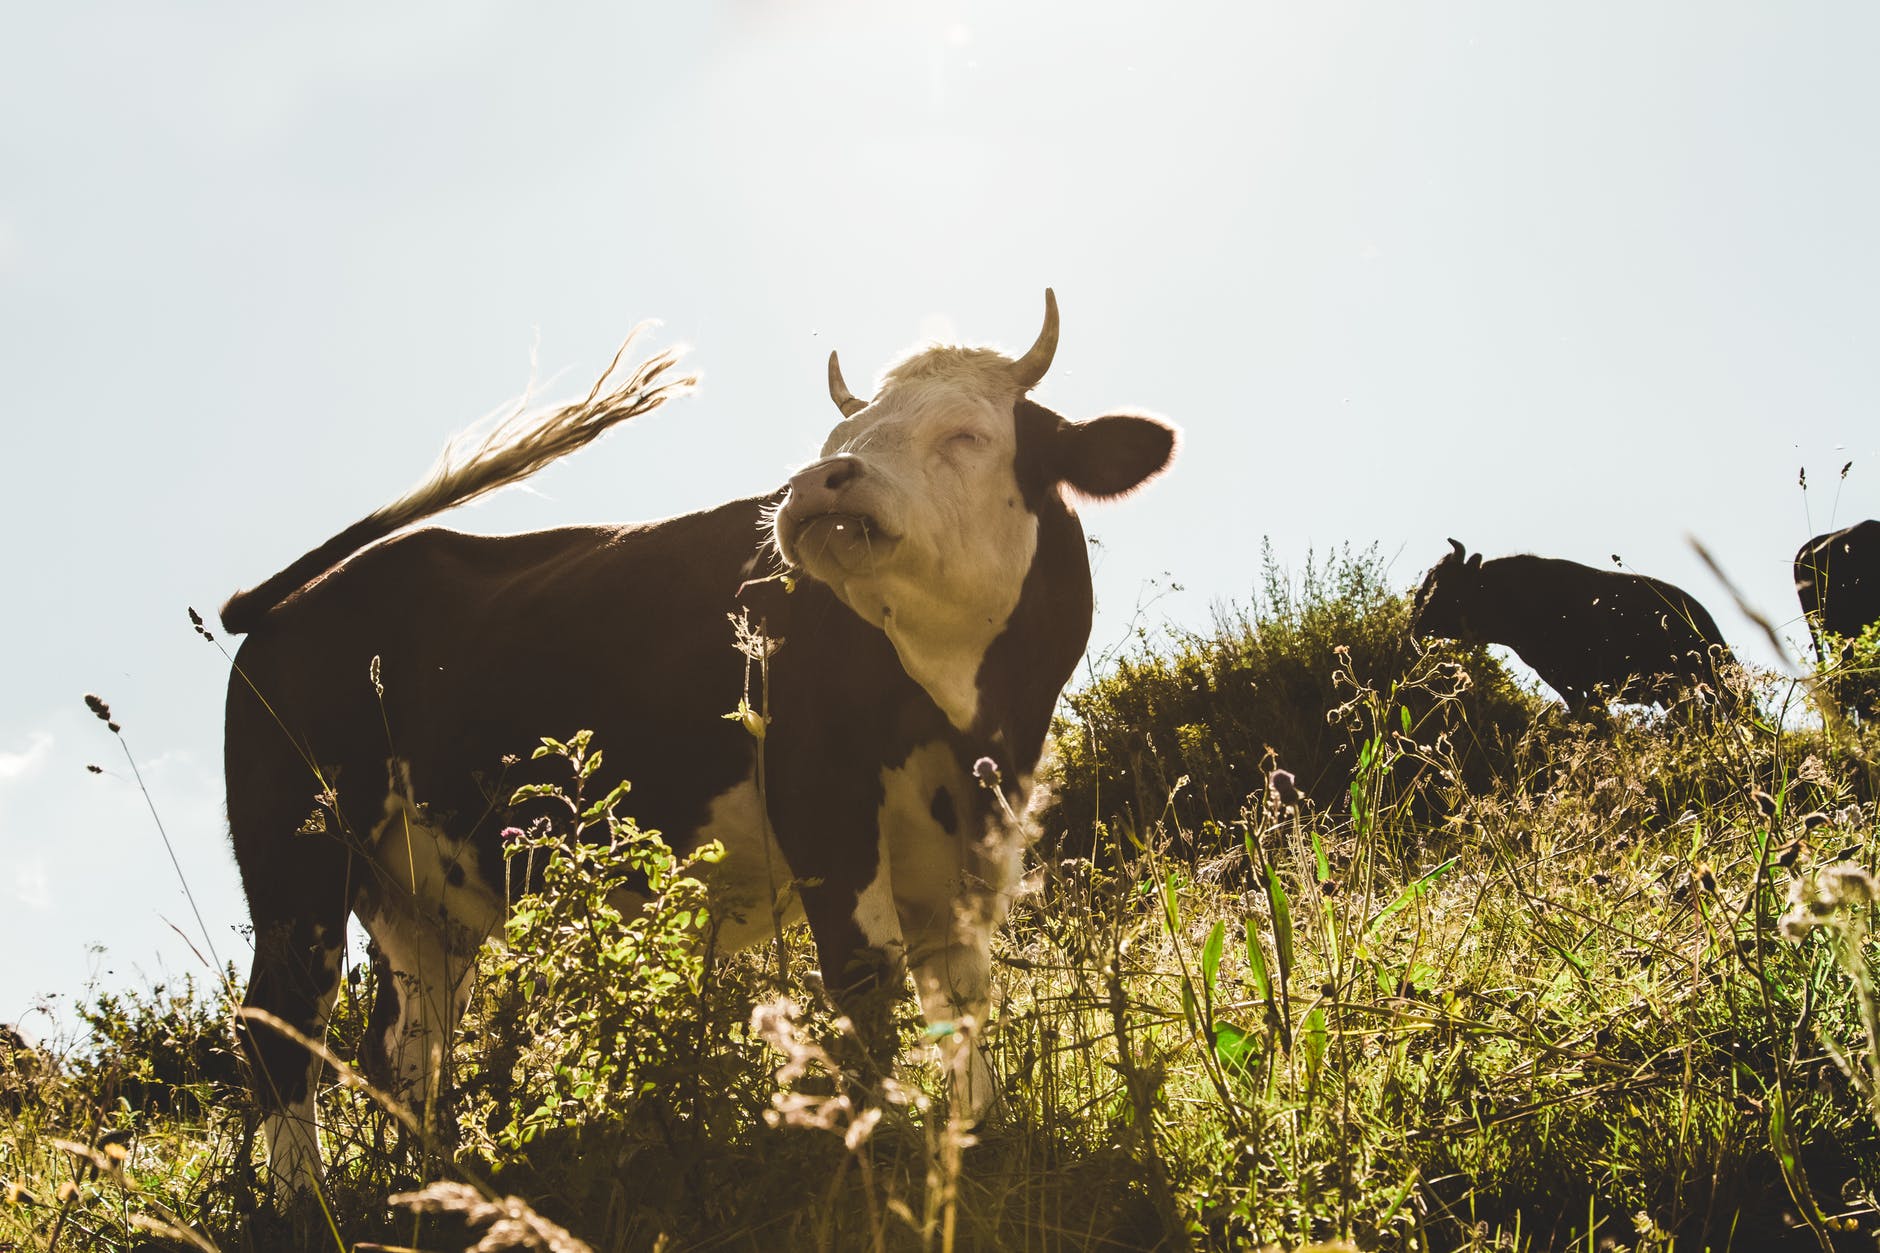 brązowo-biała krowa na polu trawiastym, mówiąca poprawnie po włosku